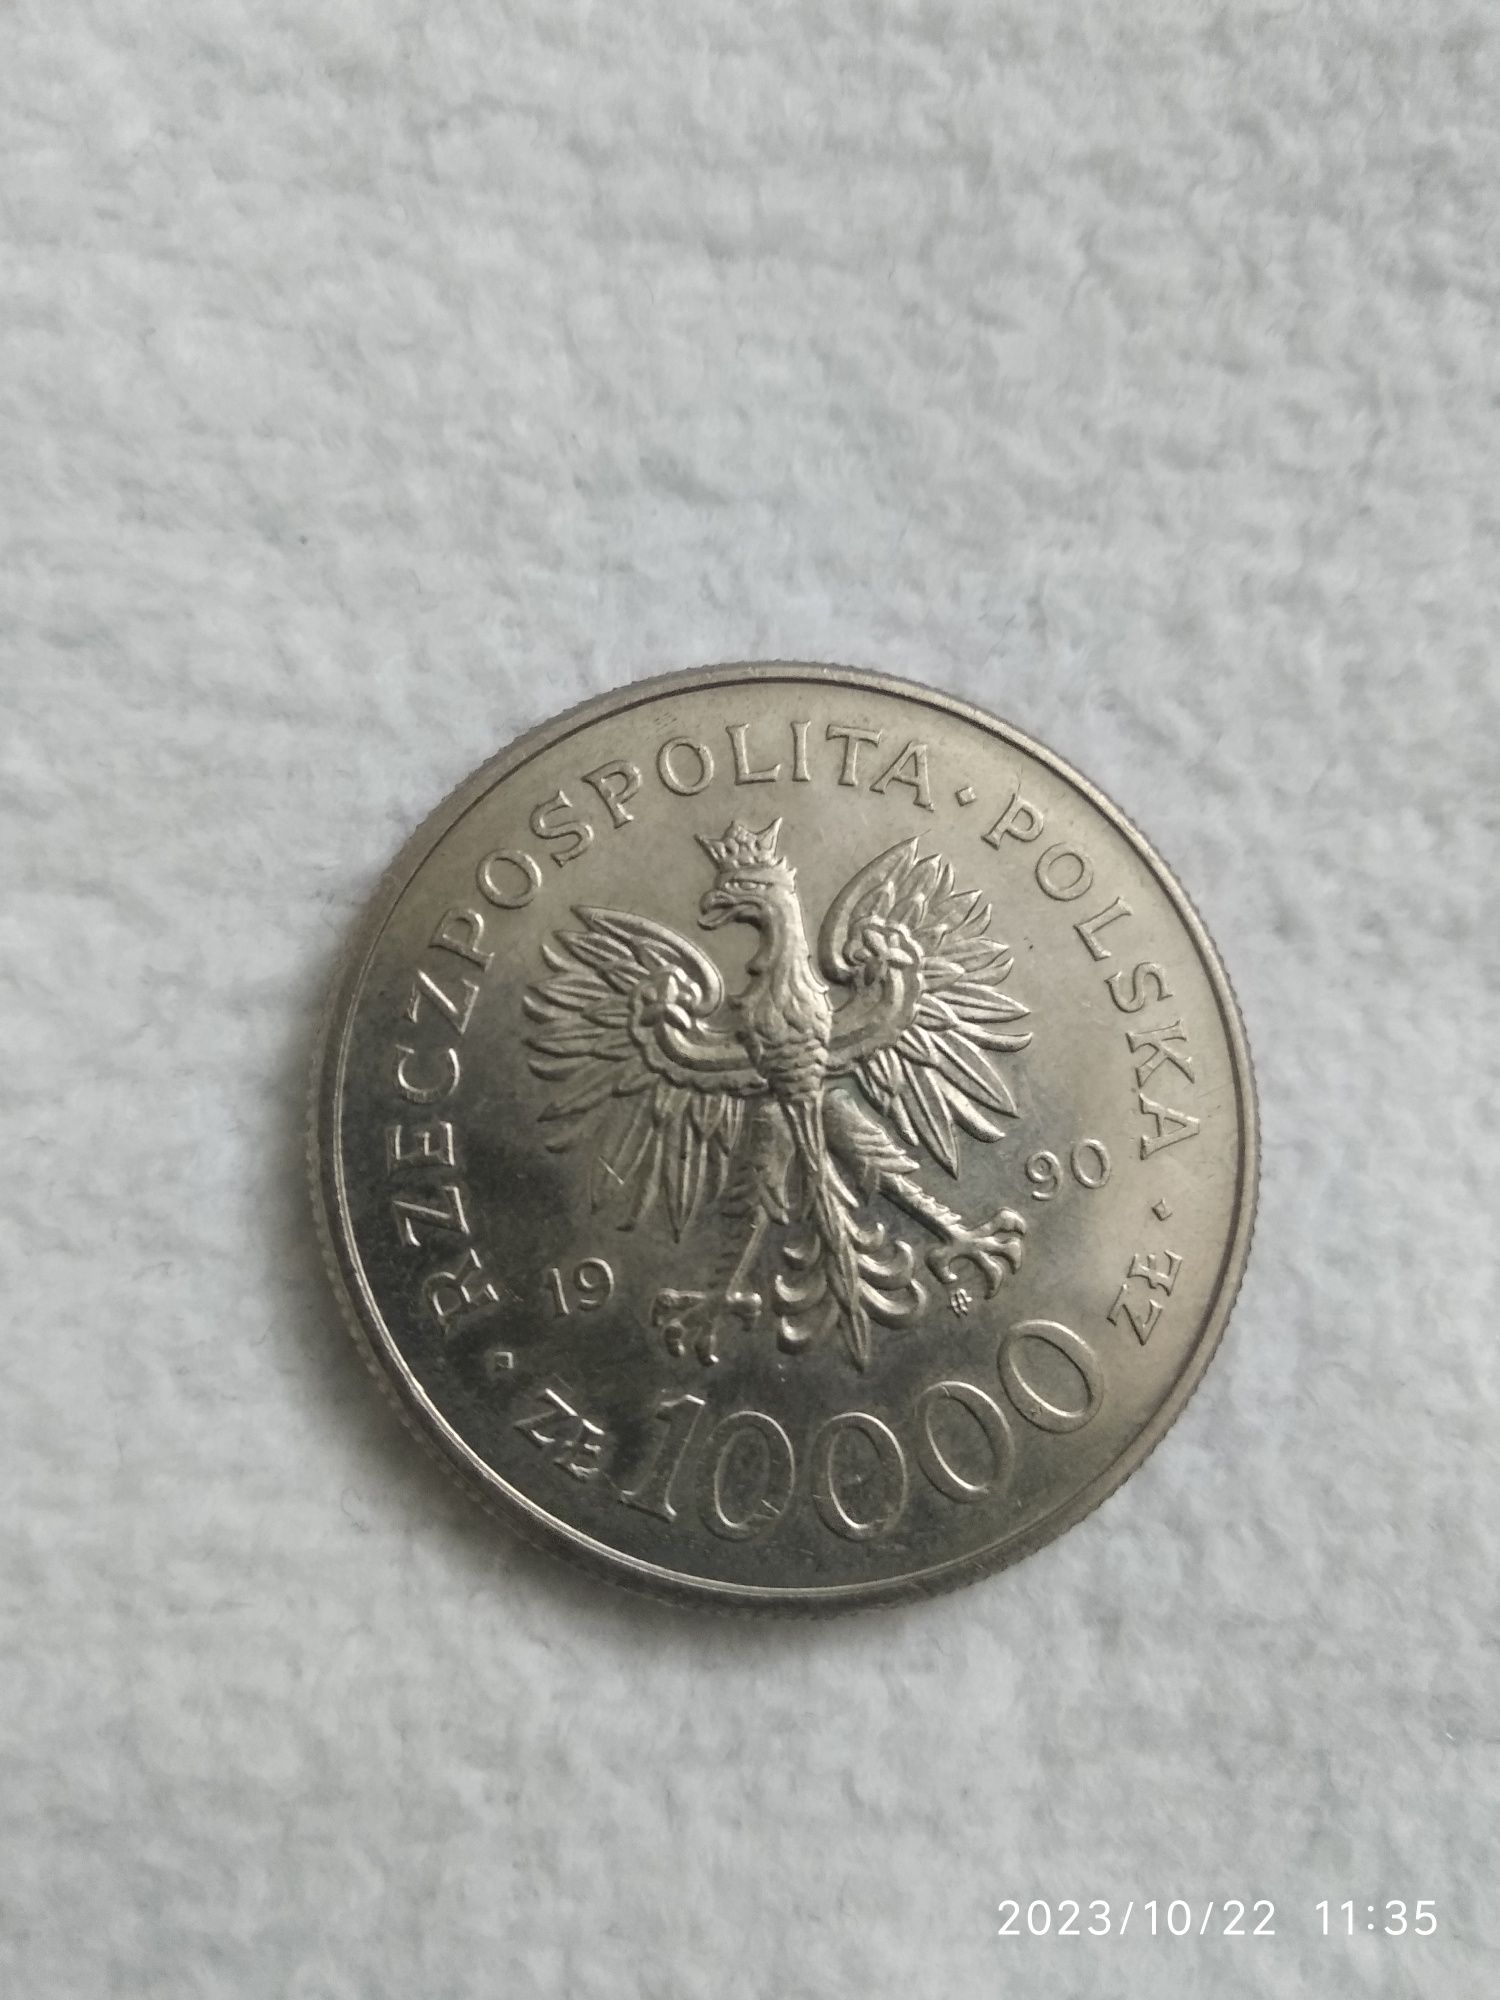 Moneta 10 000zł z roku 1990 z przodu Solidarność
Stan monet